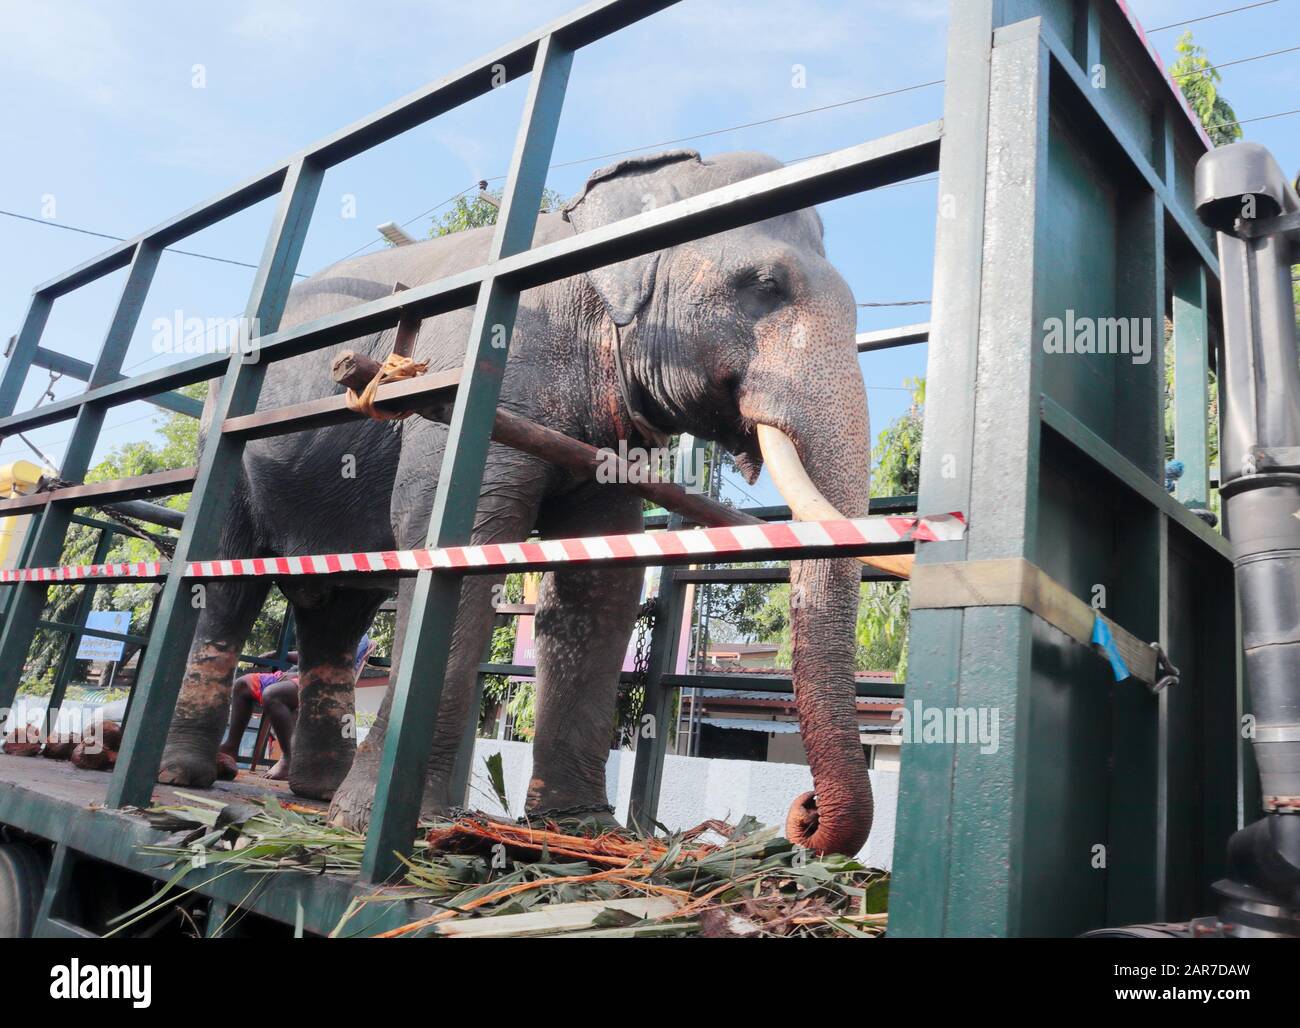 Un éléphant indien transporté par Colombo, Sri Lanka dans un camion à dos ouvert. Peut-être à un festival ou un événement local. Banque D'Images